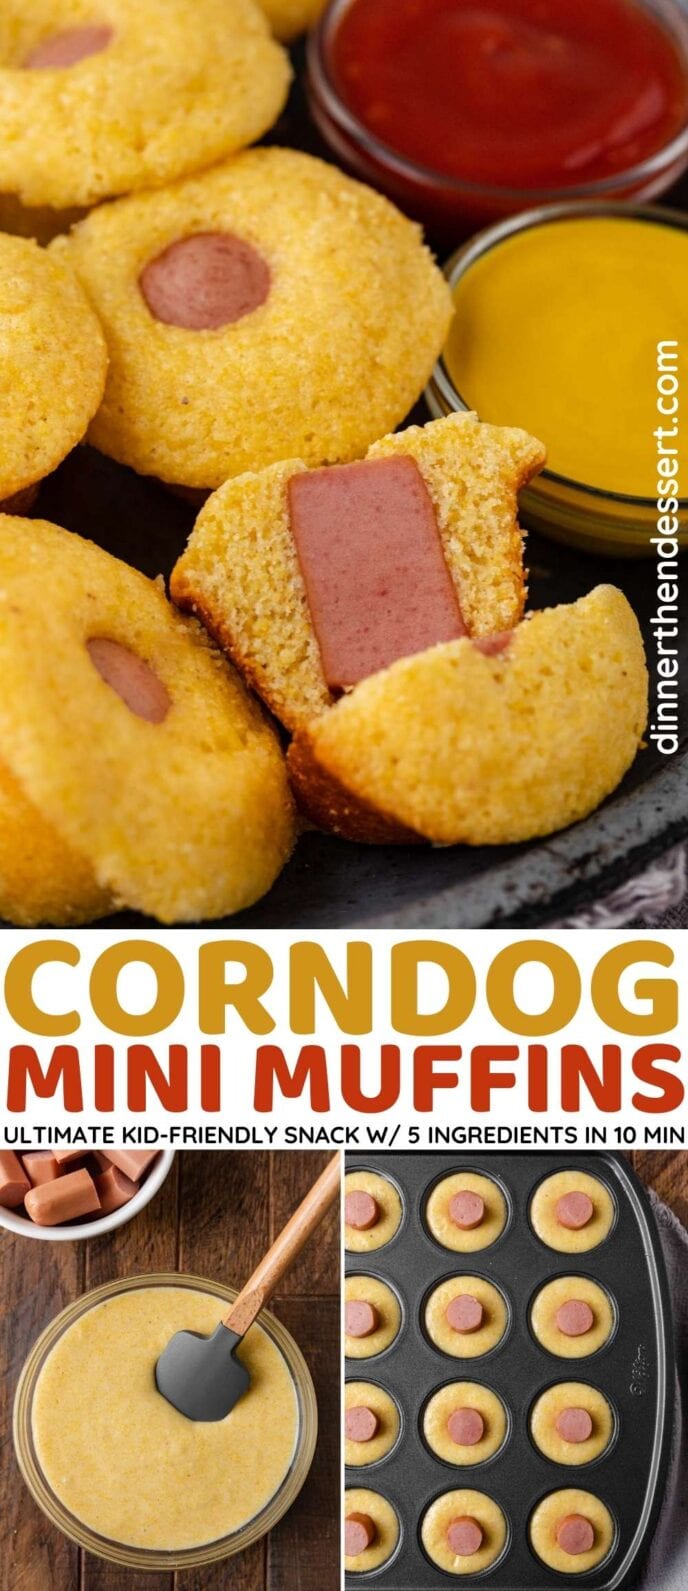 Cornbread Mini Muffins Collage